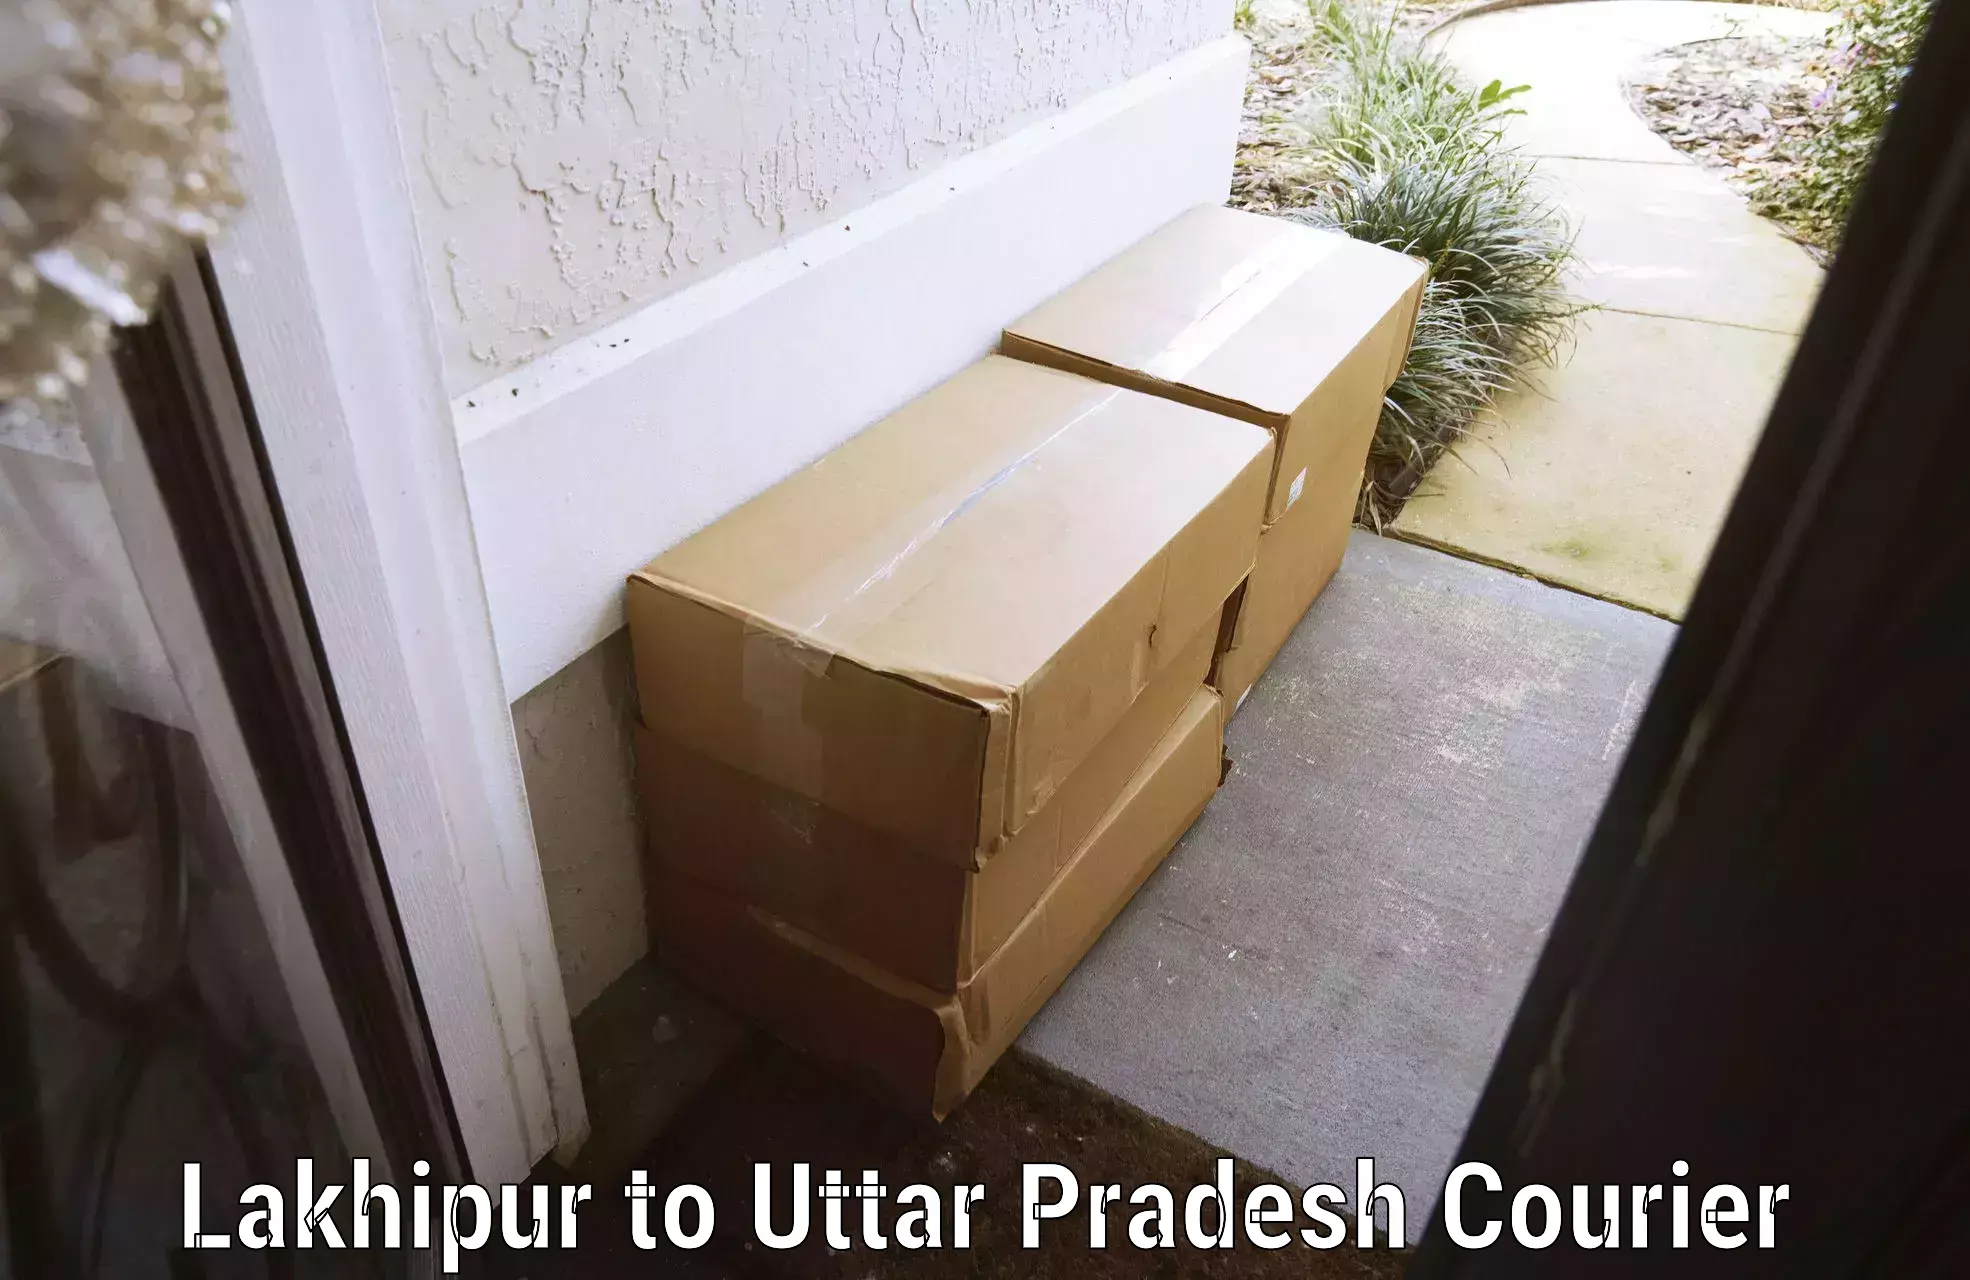 Luggage delivery network Lakhipur to Brijmanganj